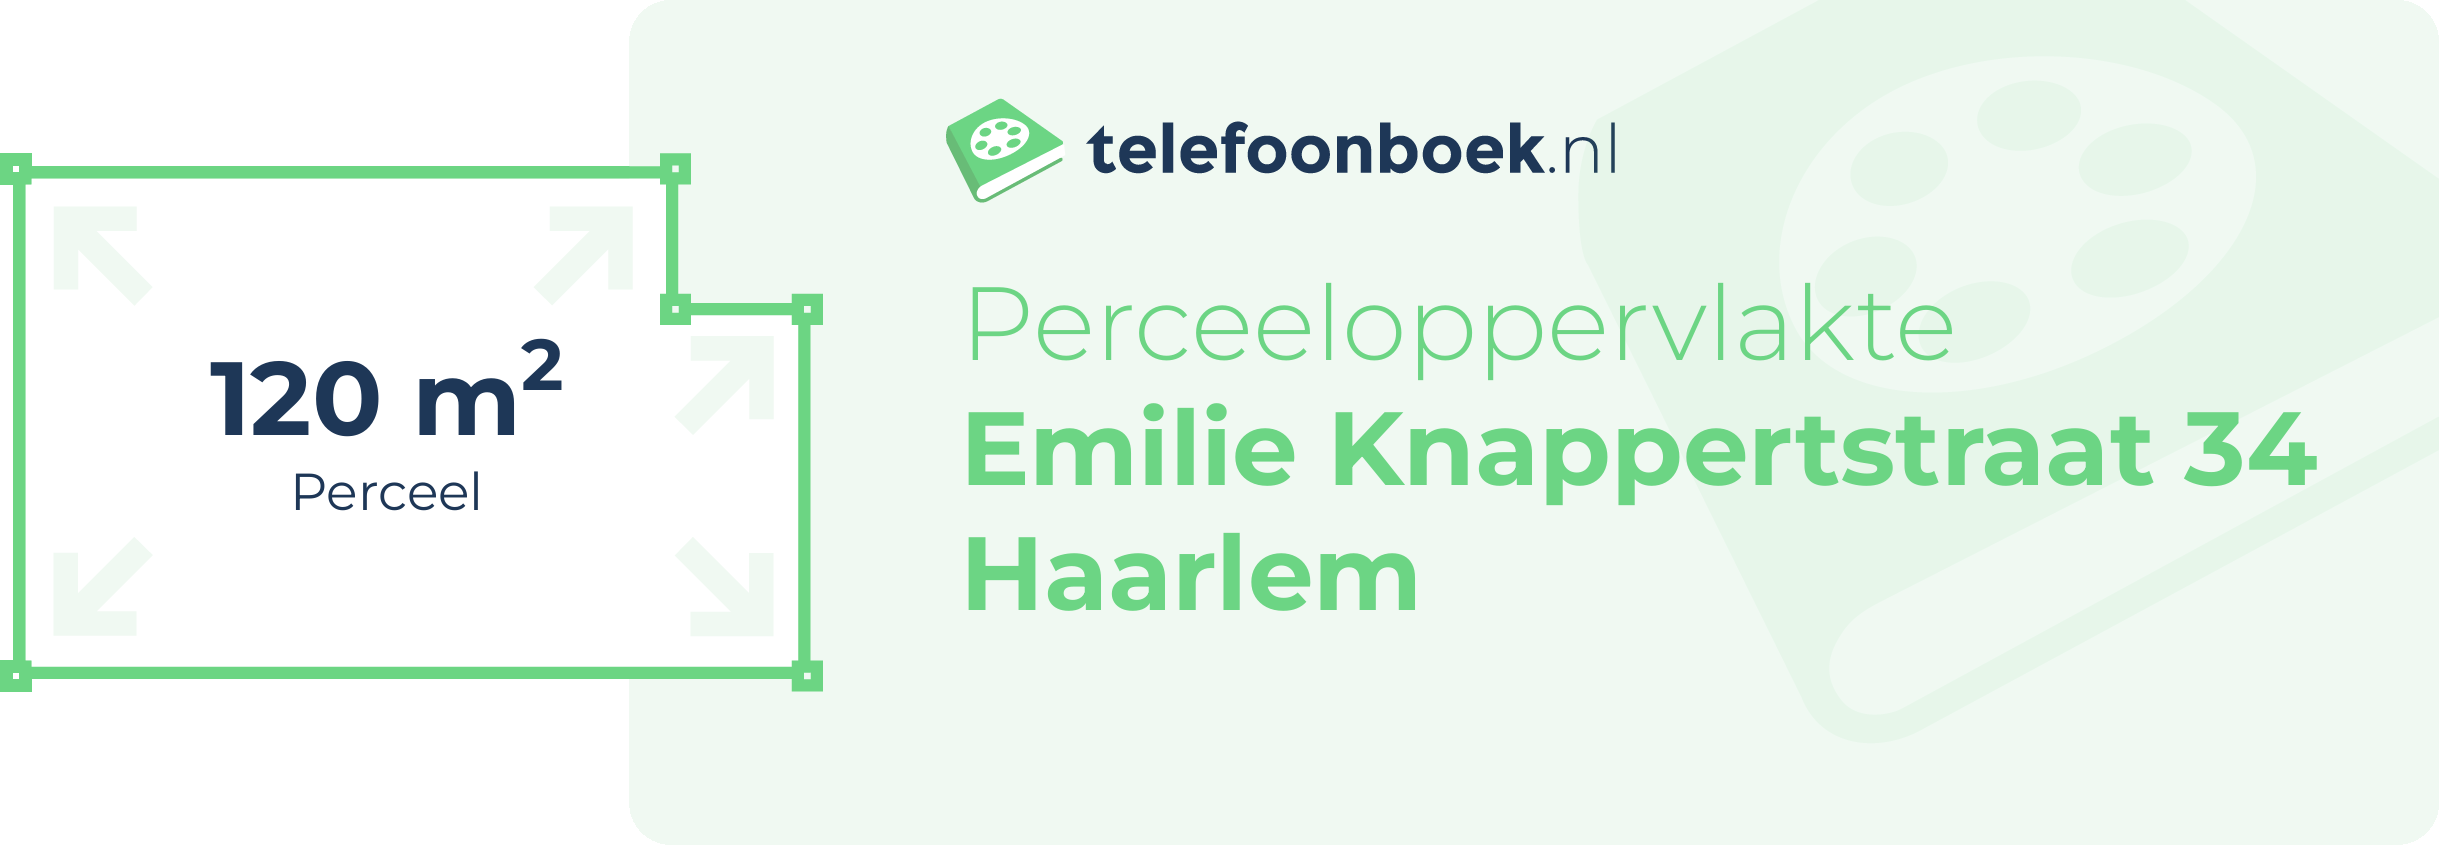 Perceeloppervlakte Emilie Knappertstraat 34 Haarlem